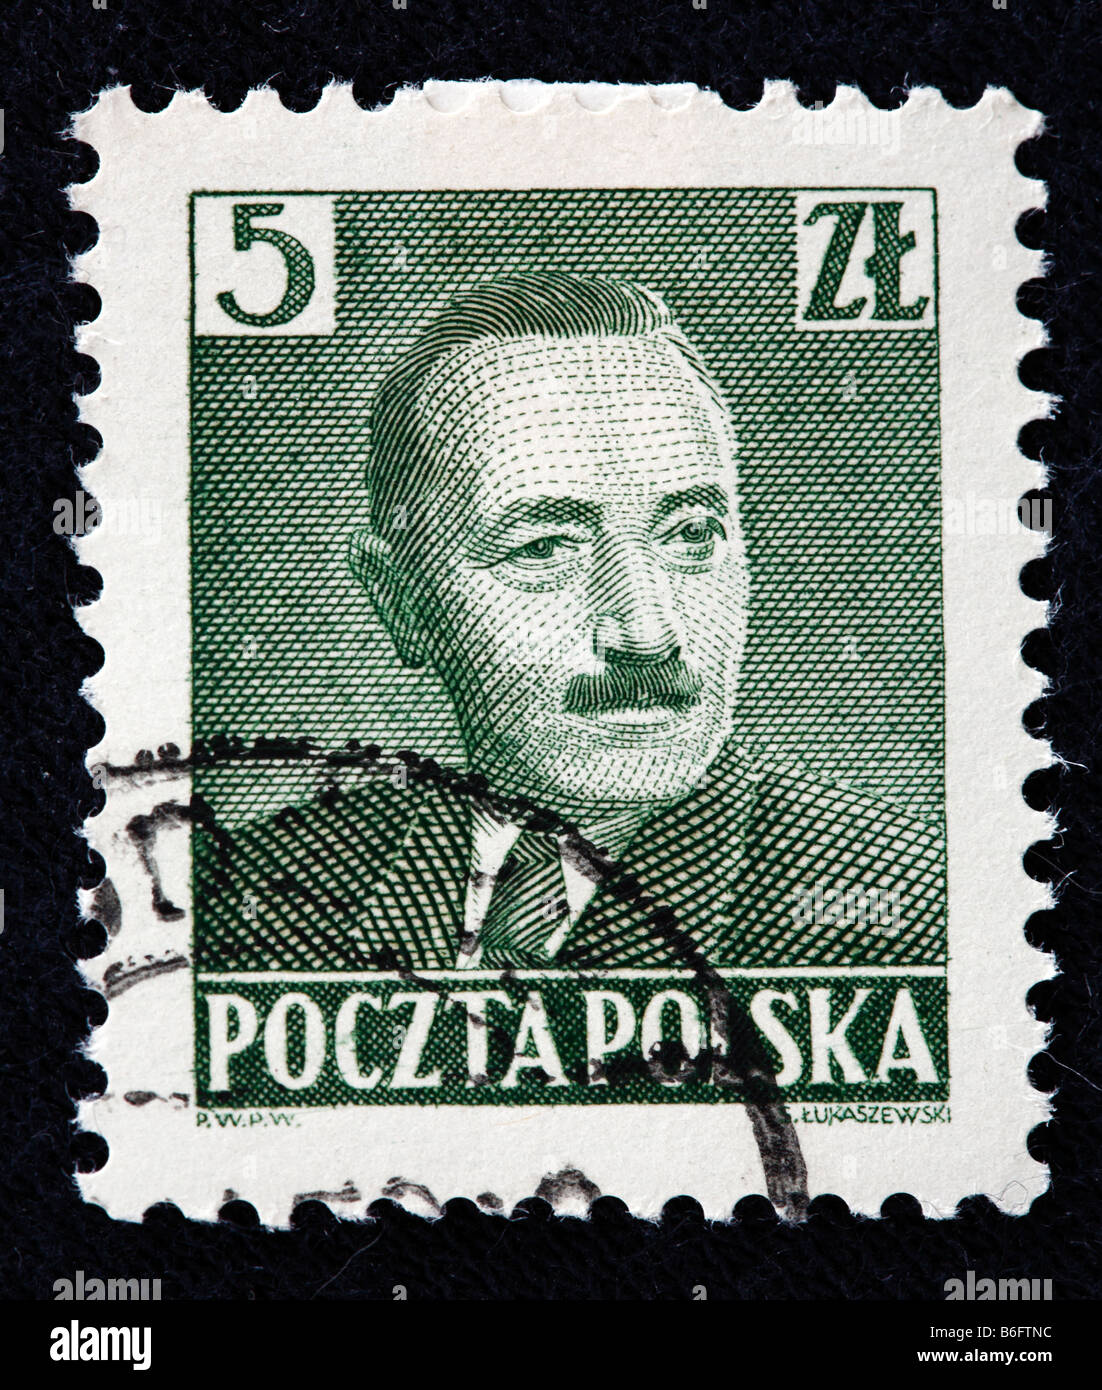 Boleslav Bierut, Président de la Pologne (1947-1952), timbre-poste, Pologne Banque D'Images